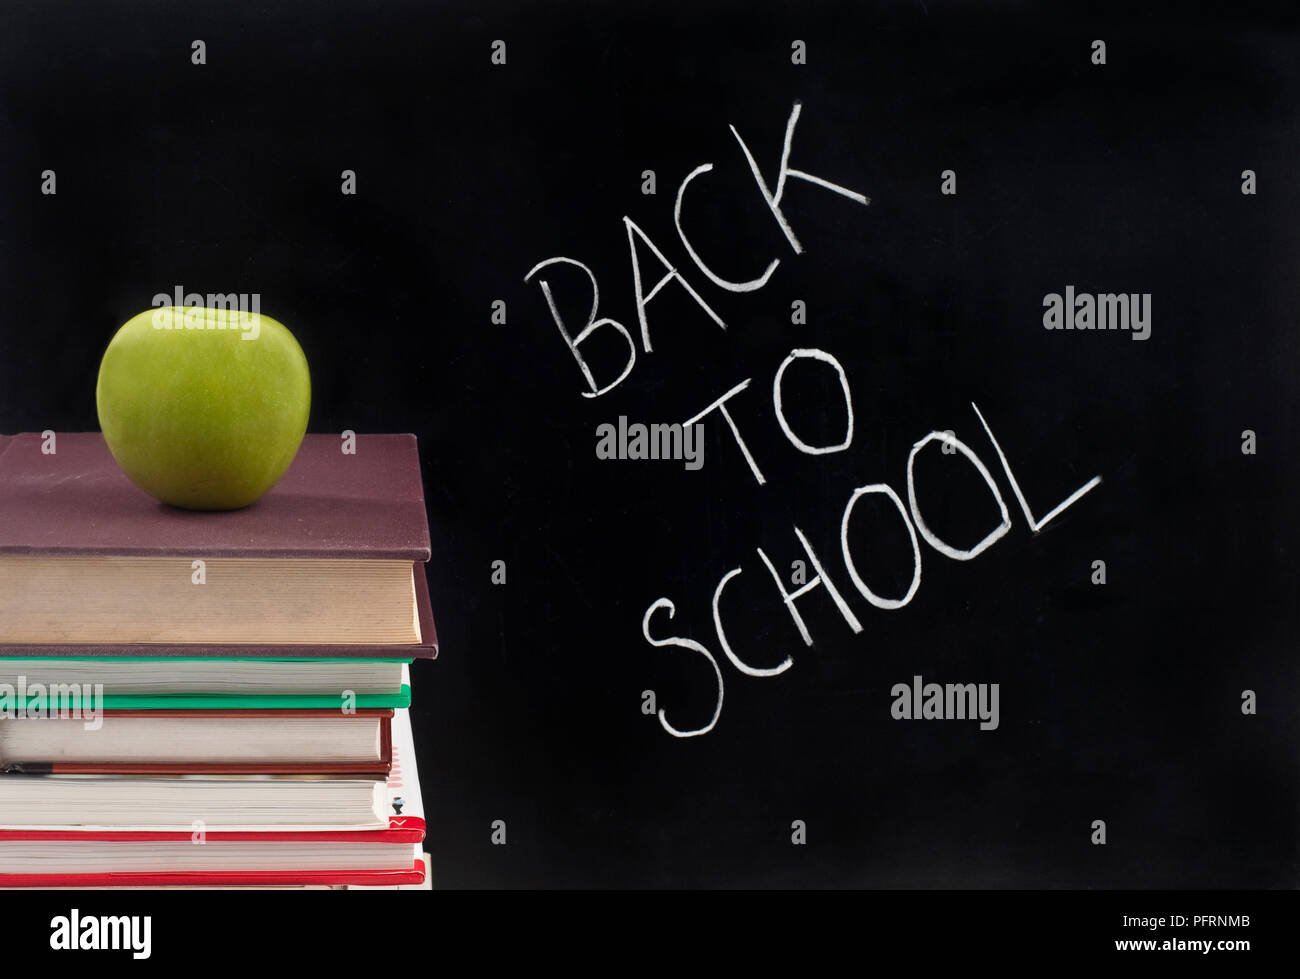 La frase "Si torna a scuola" scritto in gesso su una lavagna, accanto a una pila di libri con un Apple sulla parte superiore Foto Stock